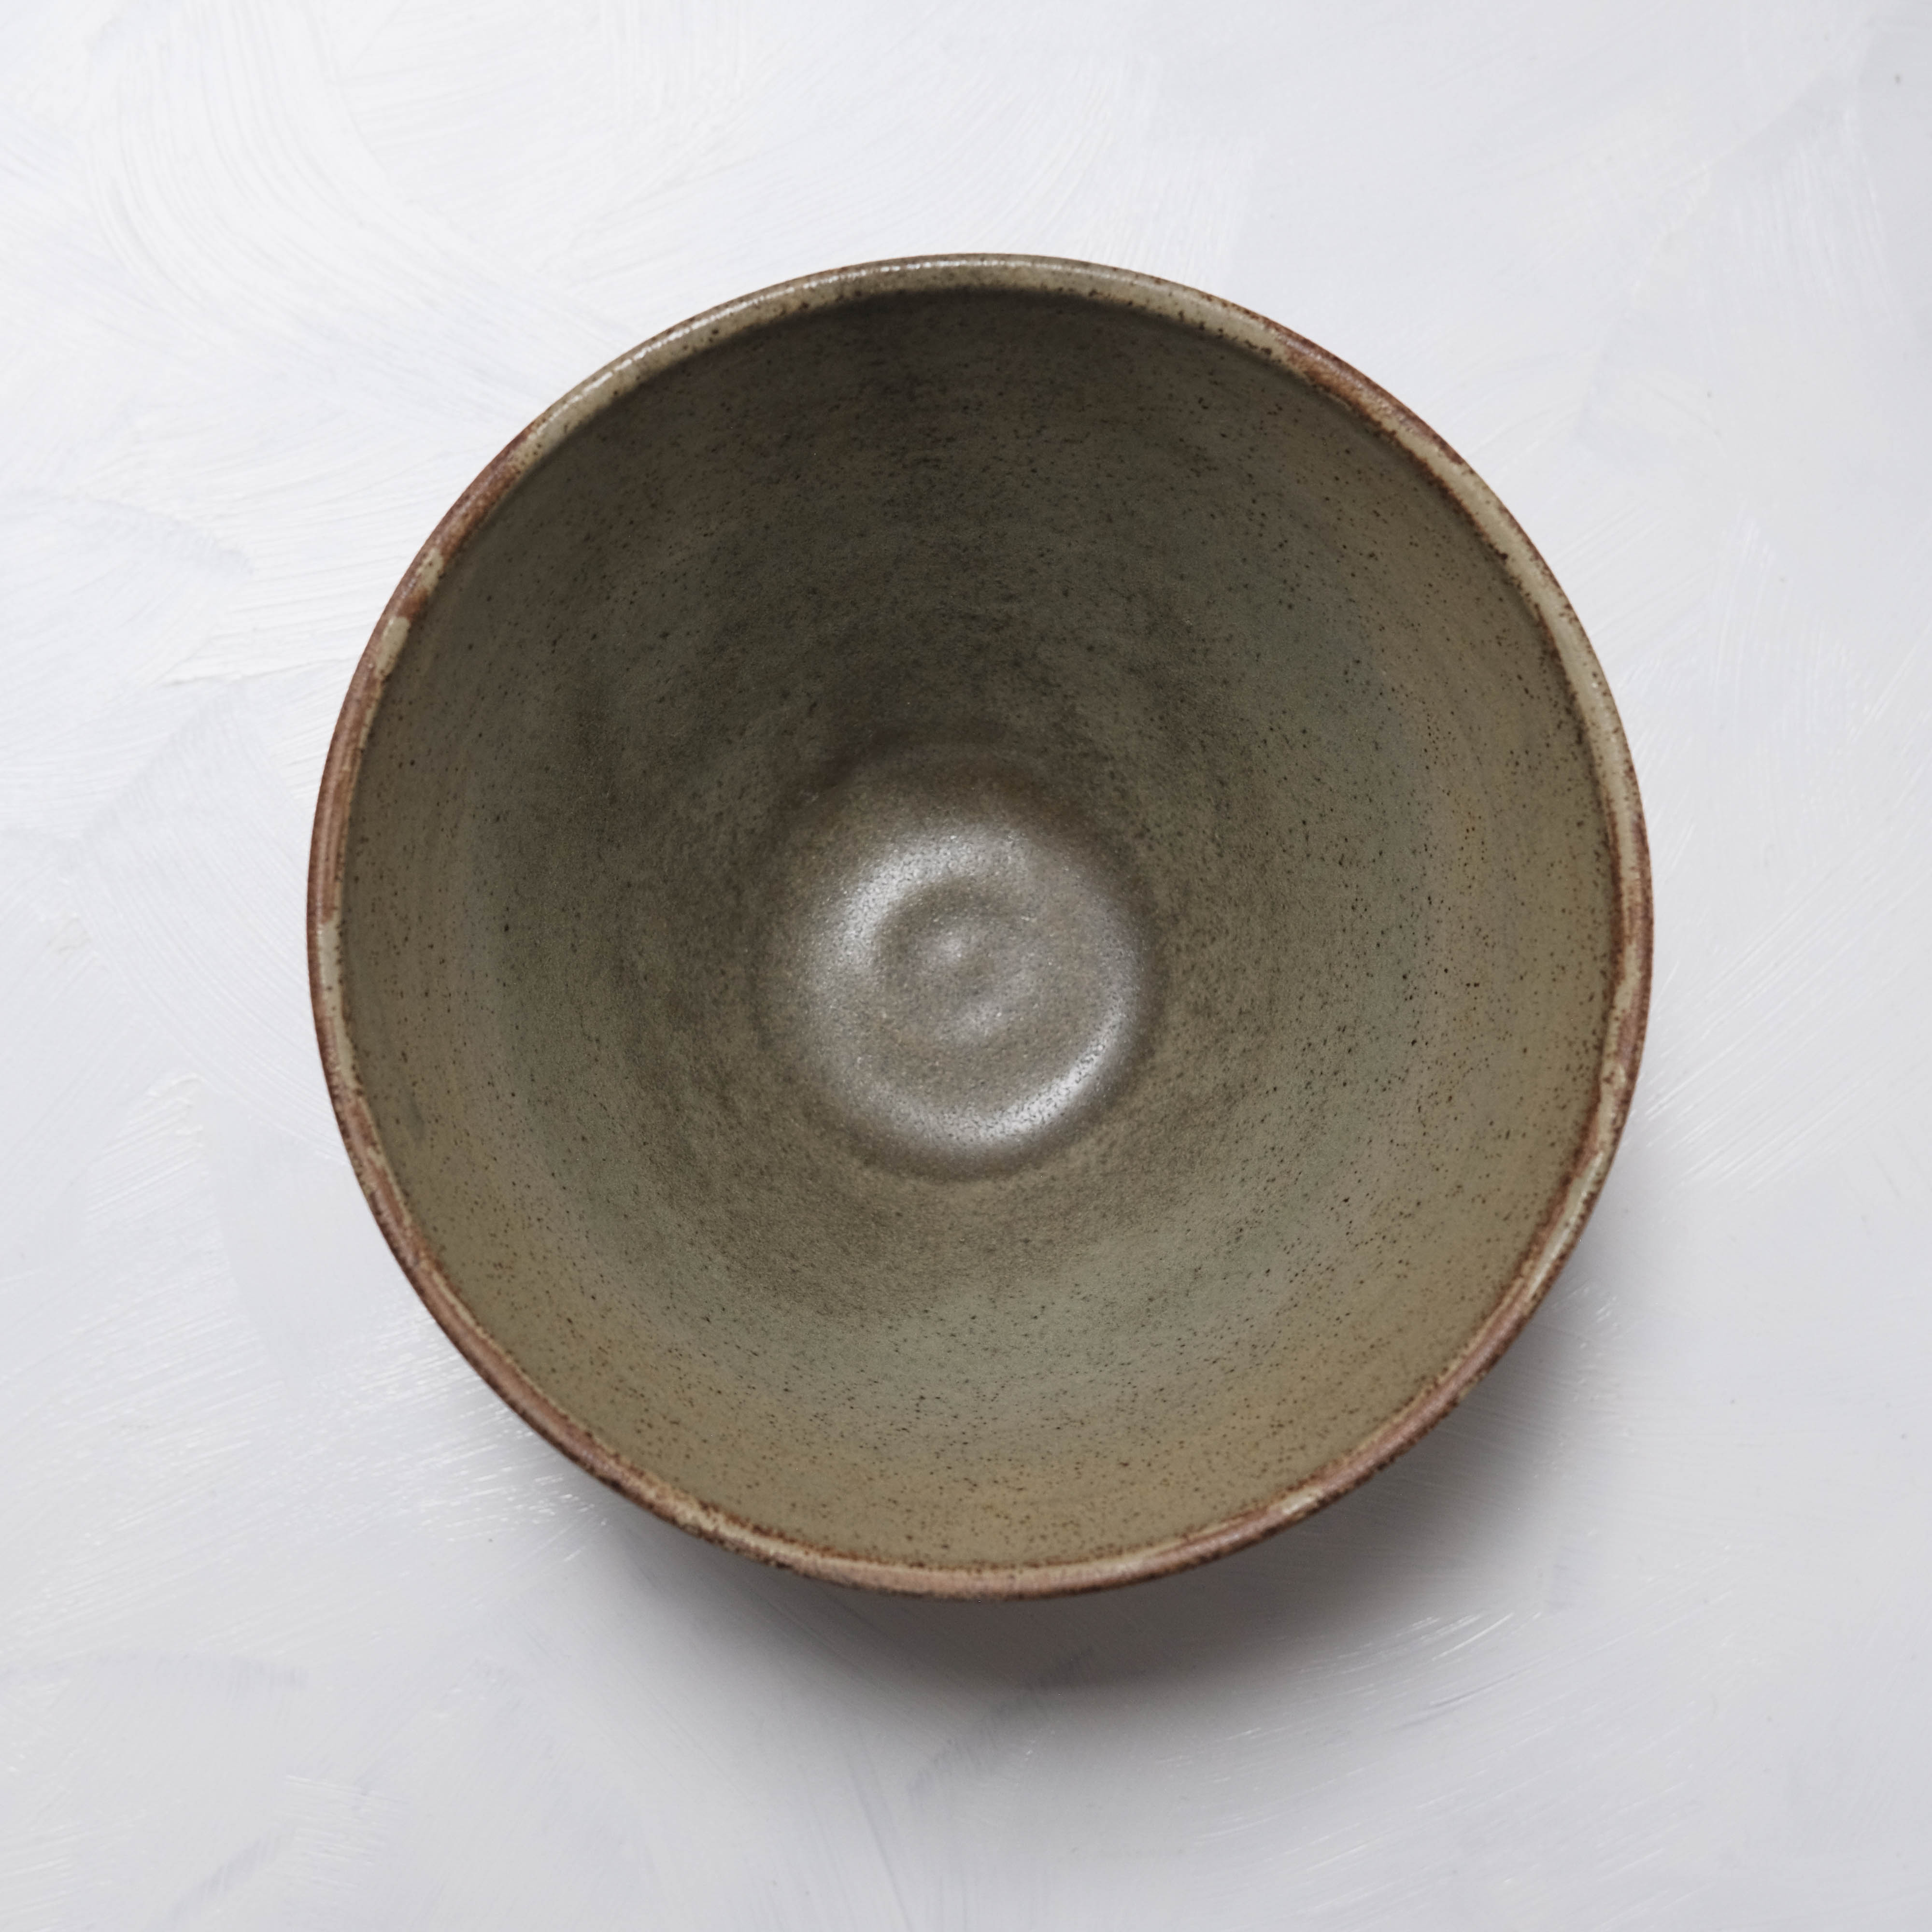 Haigusuri (灰釉) Bowl #ASH03